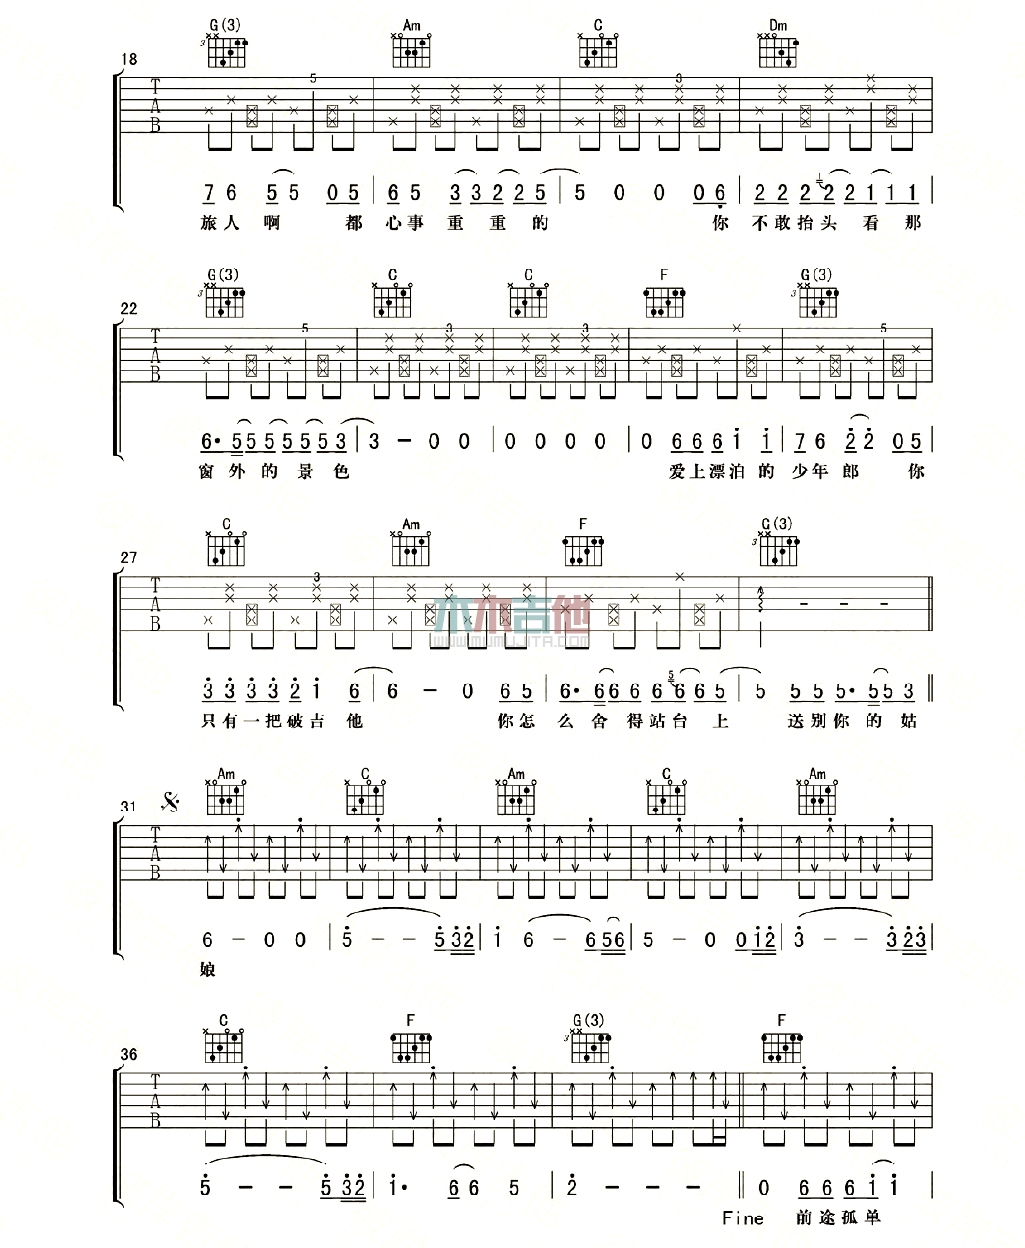 赵照《一把破吉他1999》吉他谱-Guitar Music Score